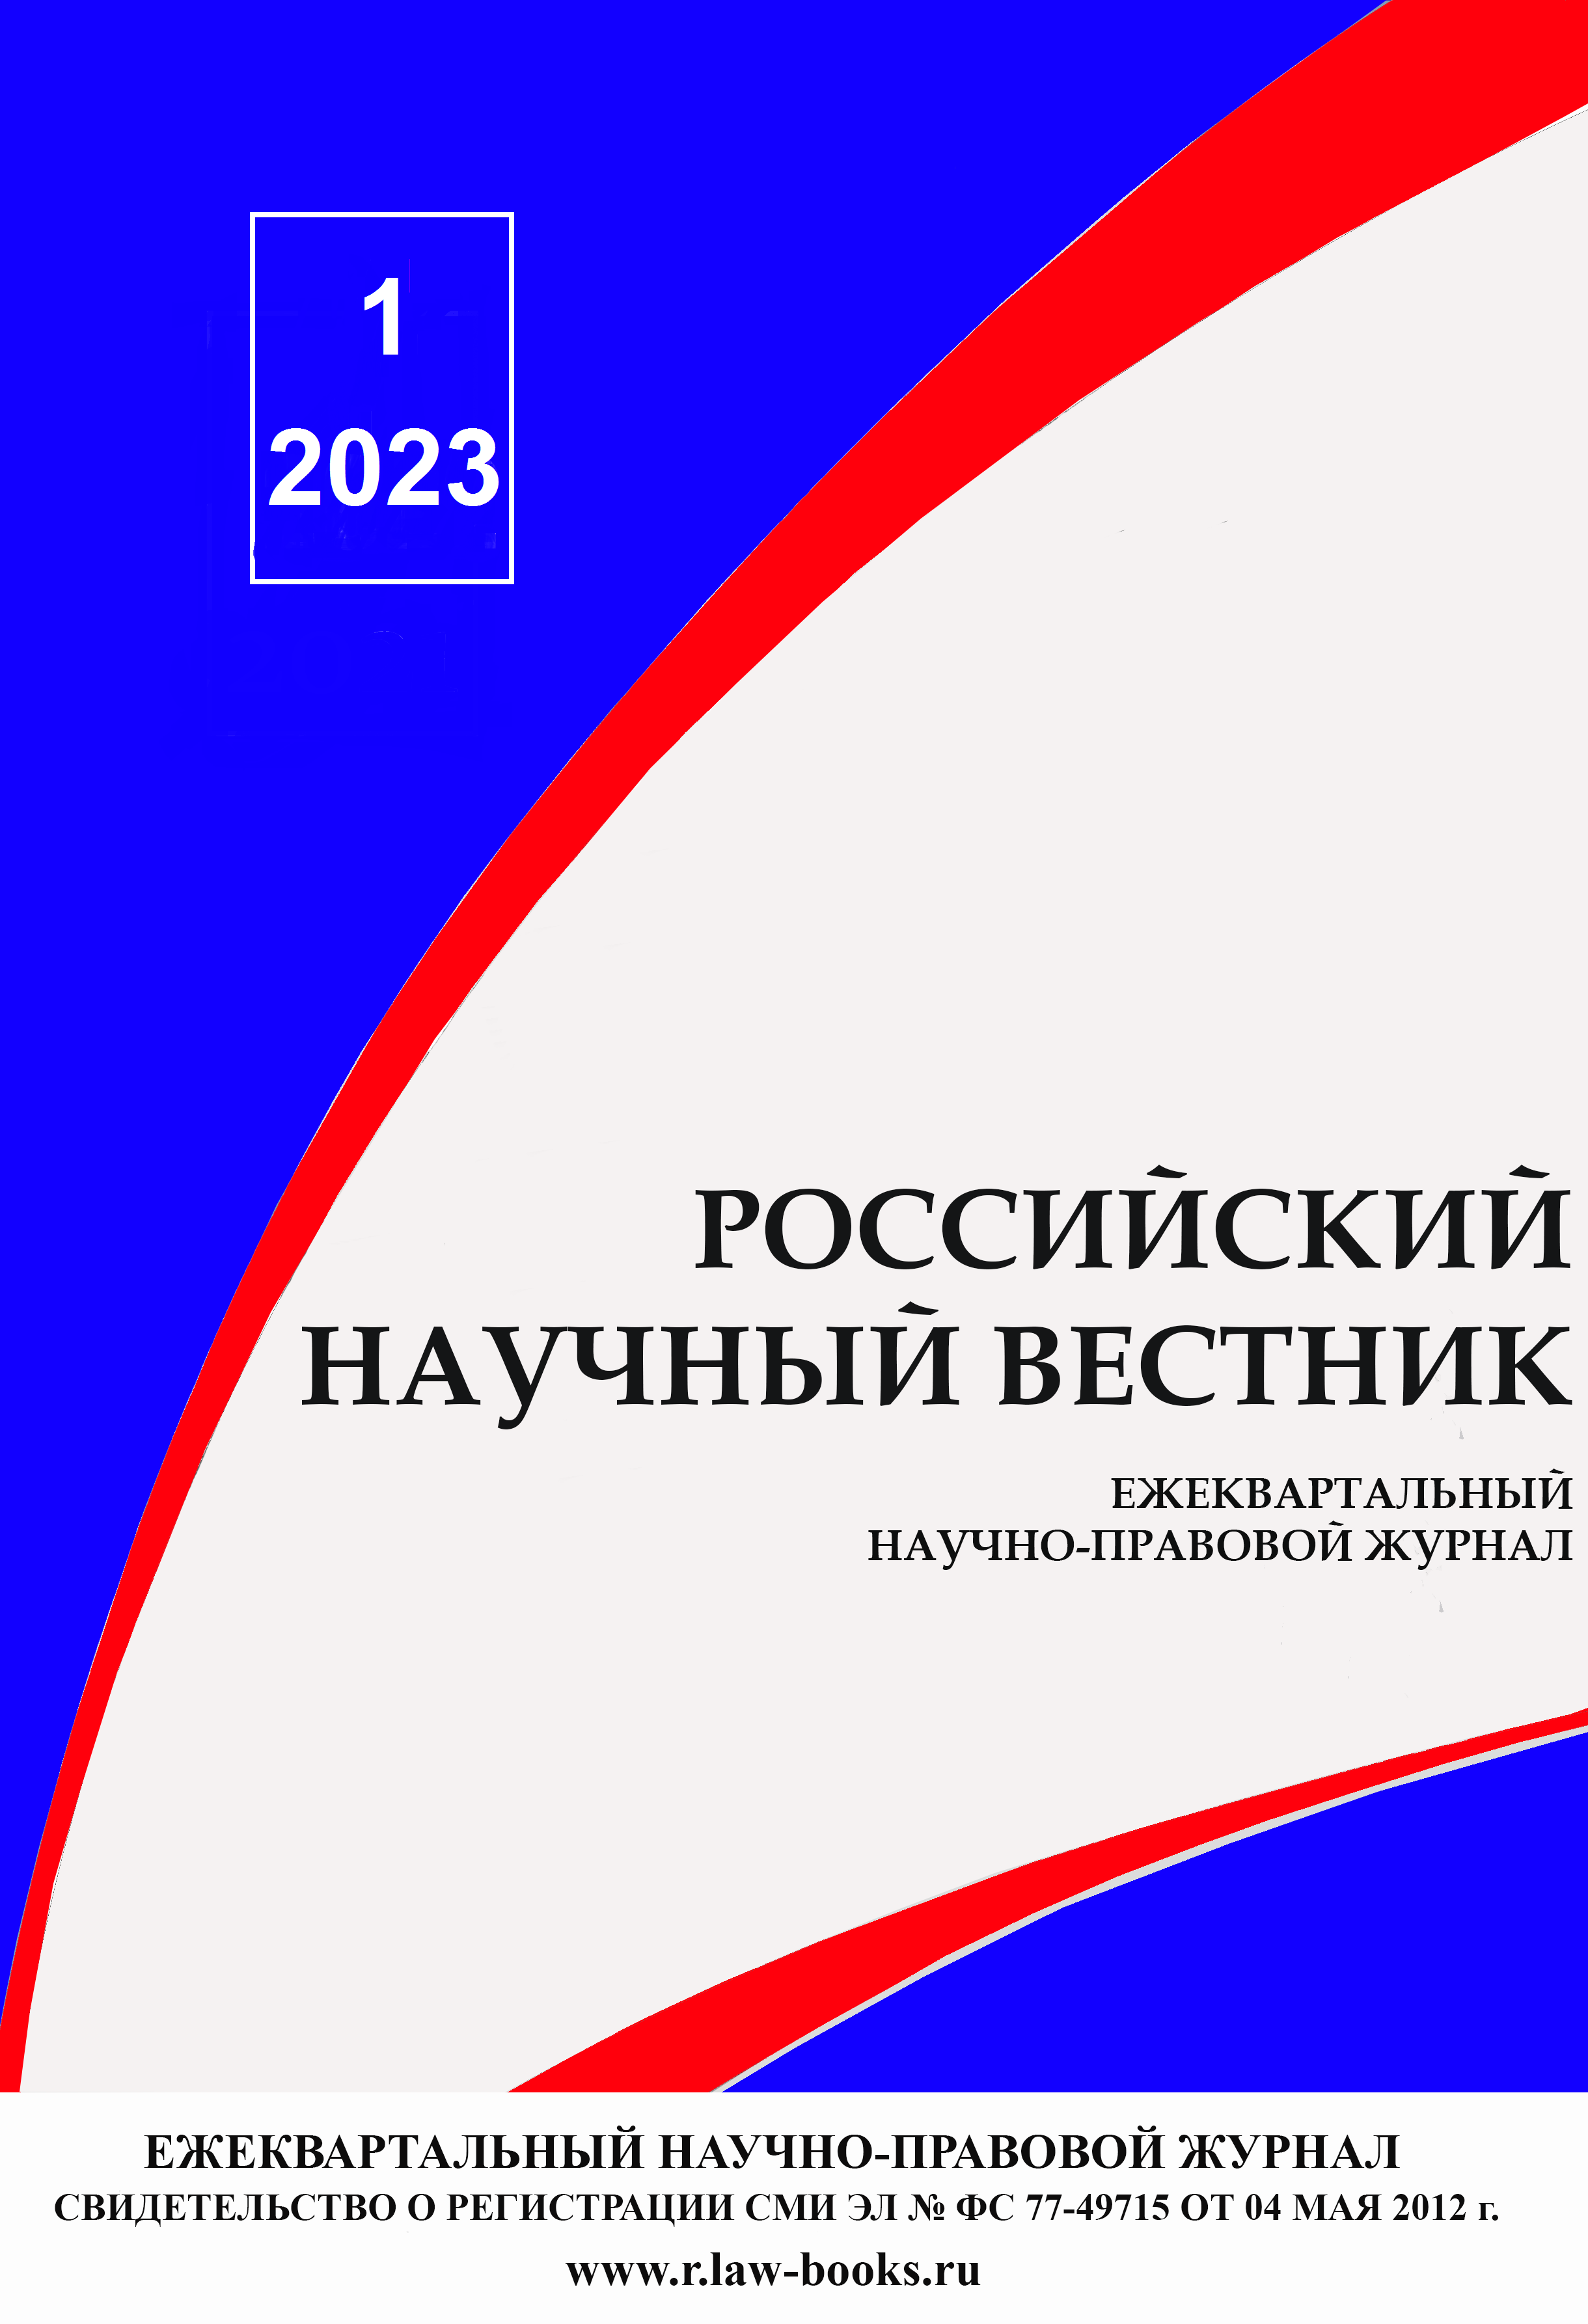 You are currently viewing Российский научный вестник № 1 2023